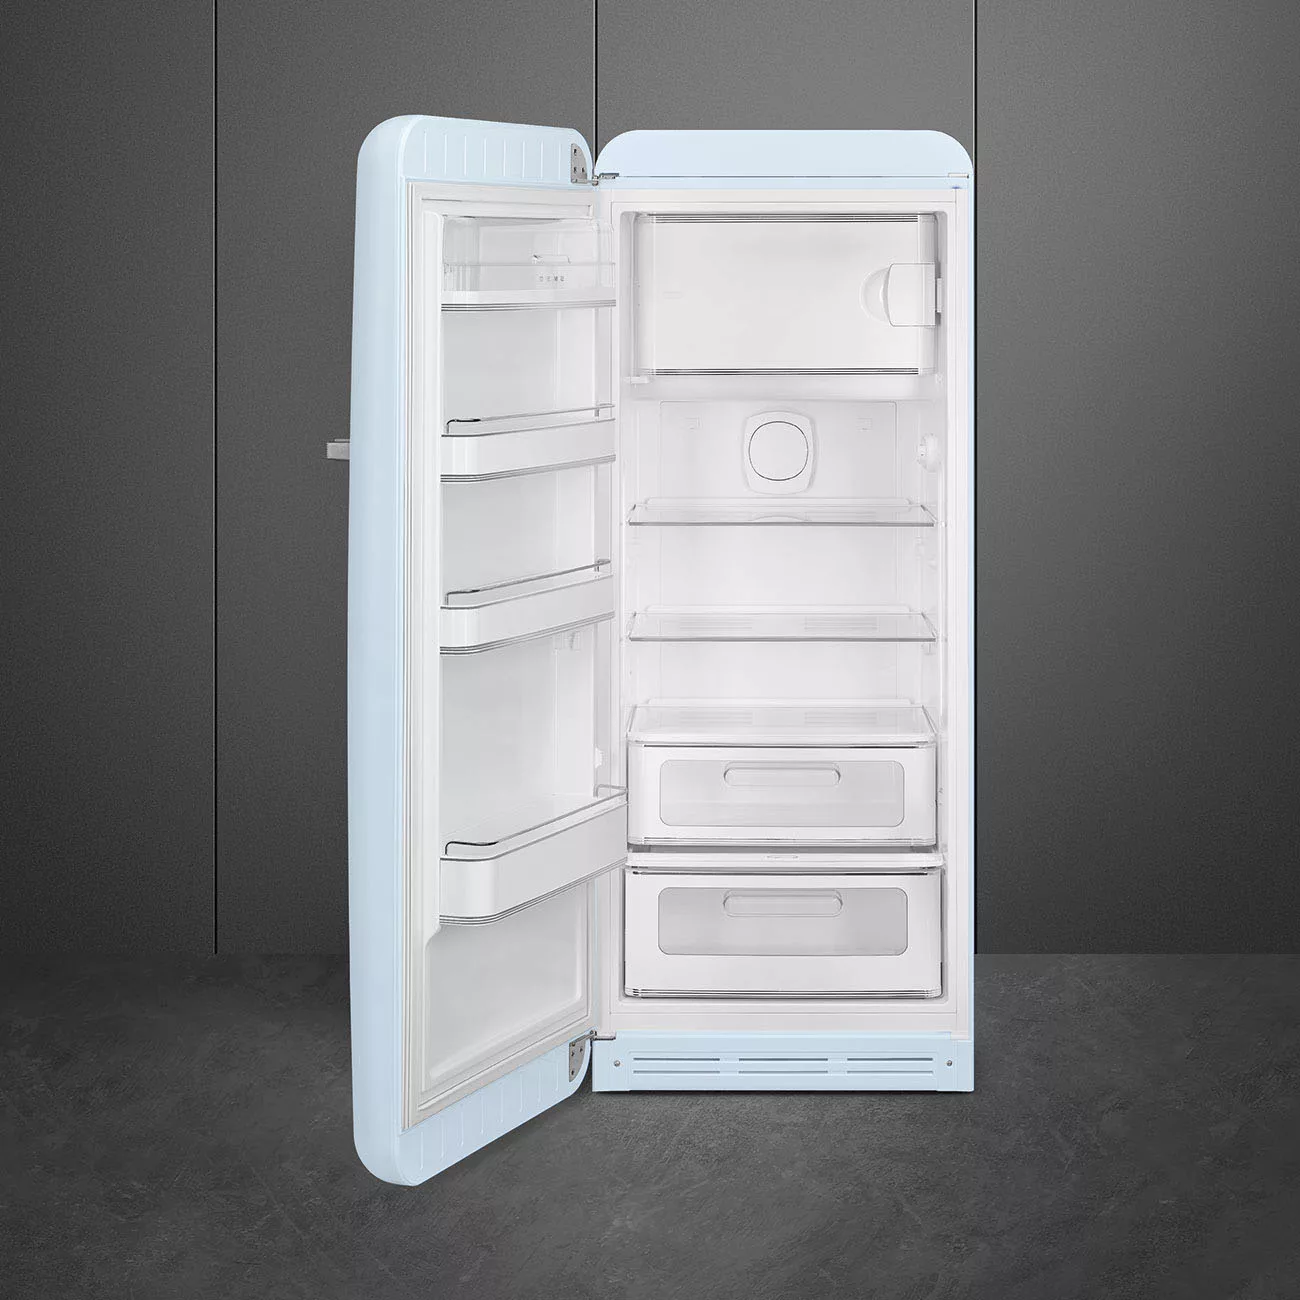 Smeg - FAB28 Kühlschrank mit Gefrierfach - pastellblau/lackiert/Türnanschla günstig online kaufen